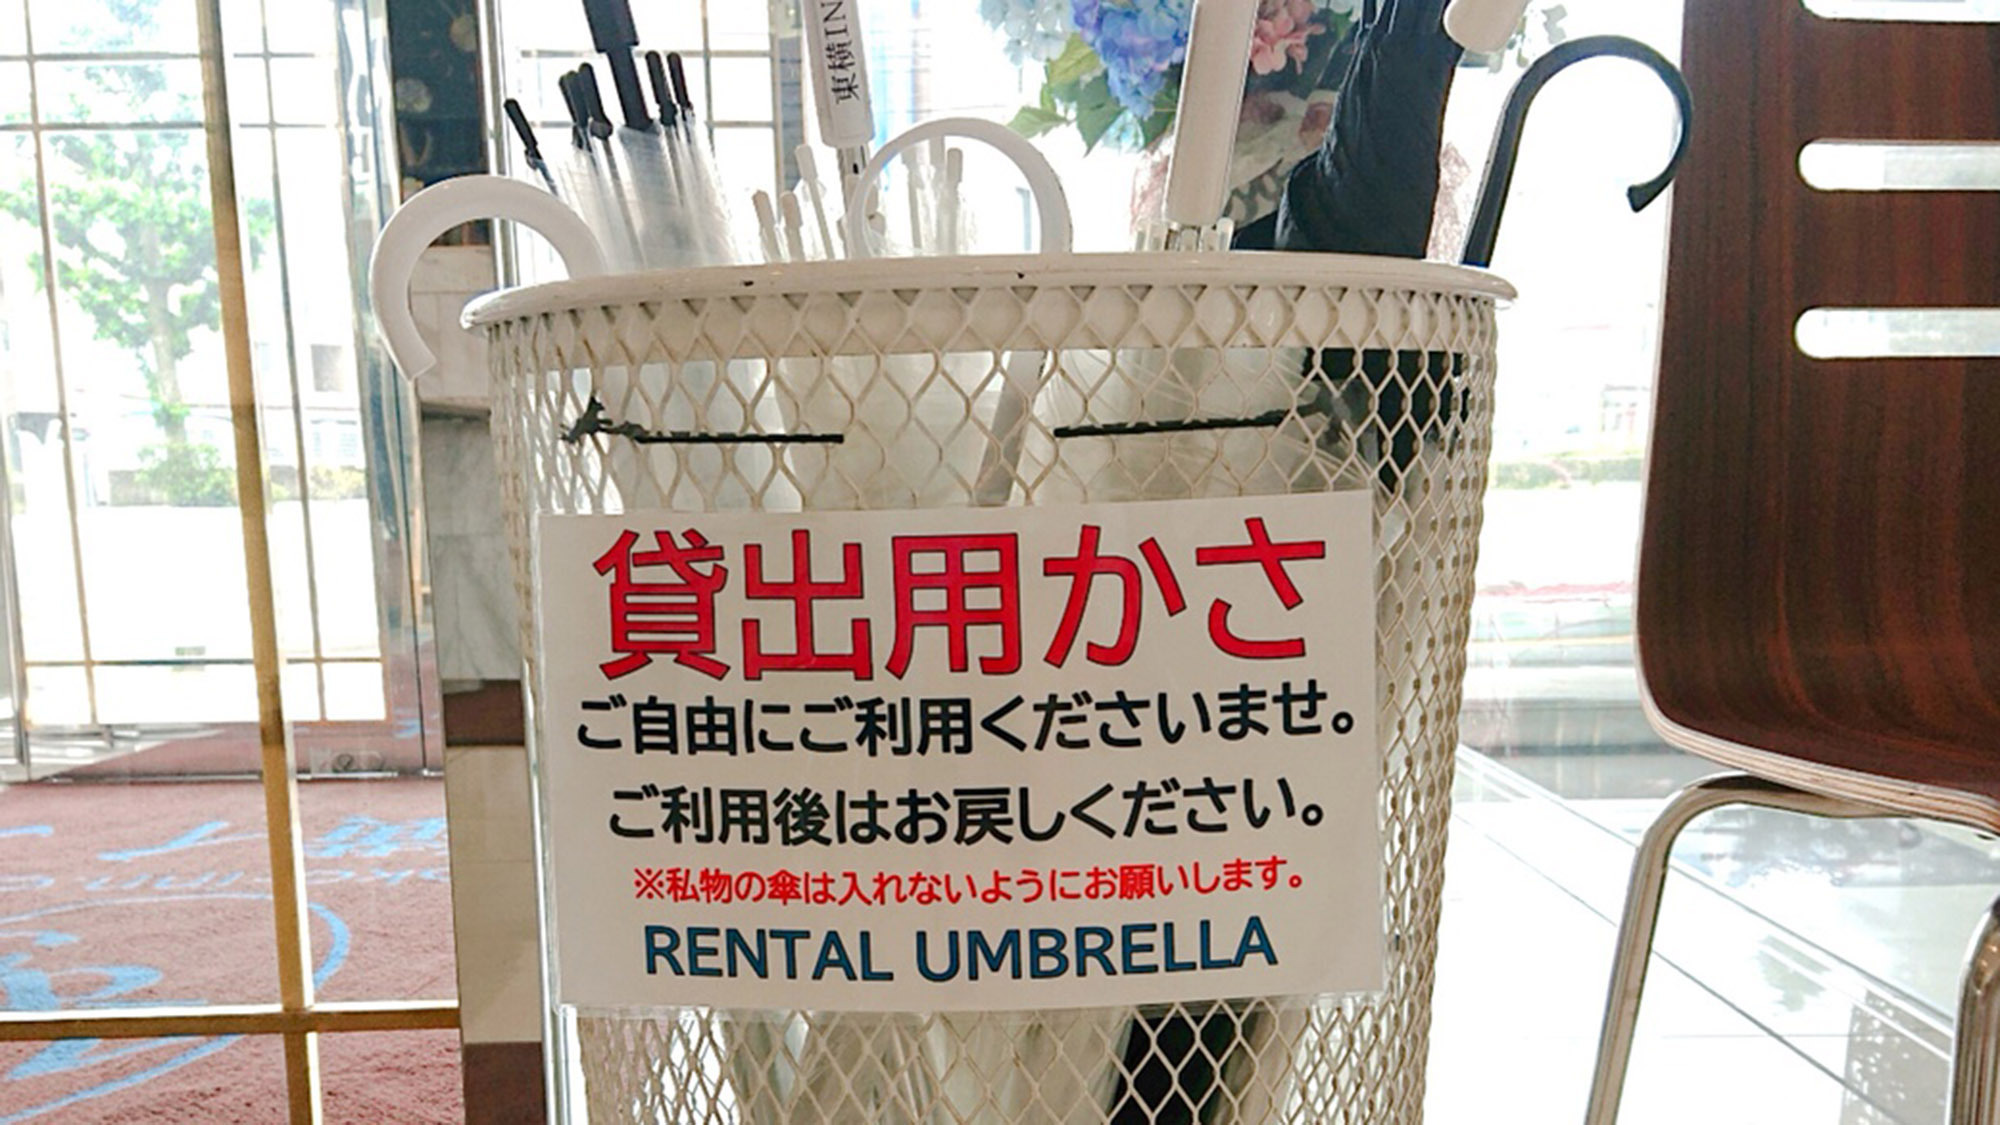 貸出用傘